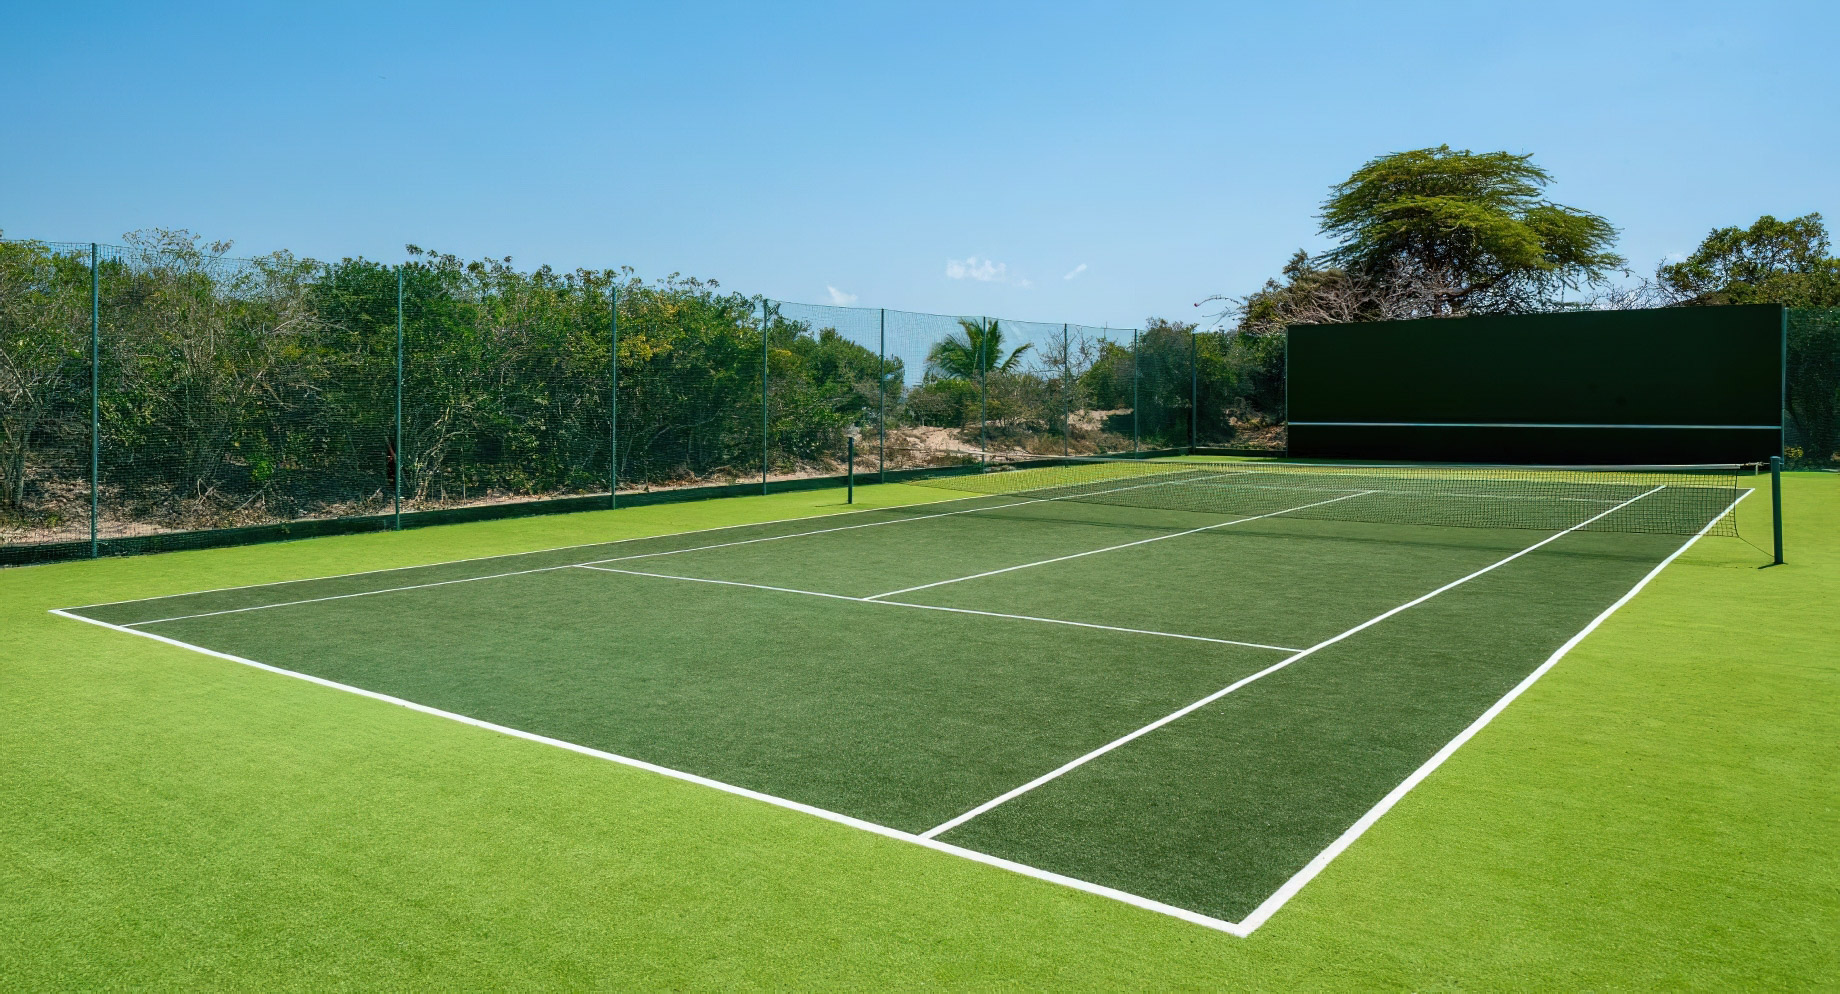 Anantara Bazaruto Island Resort - Mozambique - Tennis Court